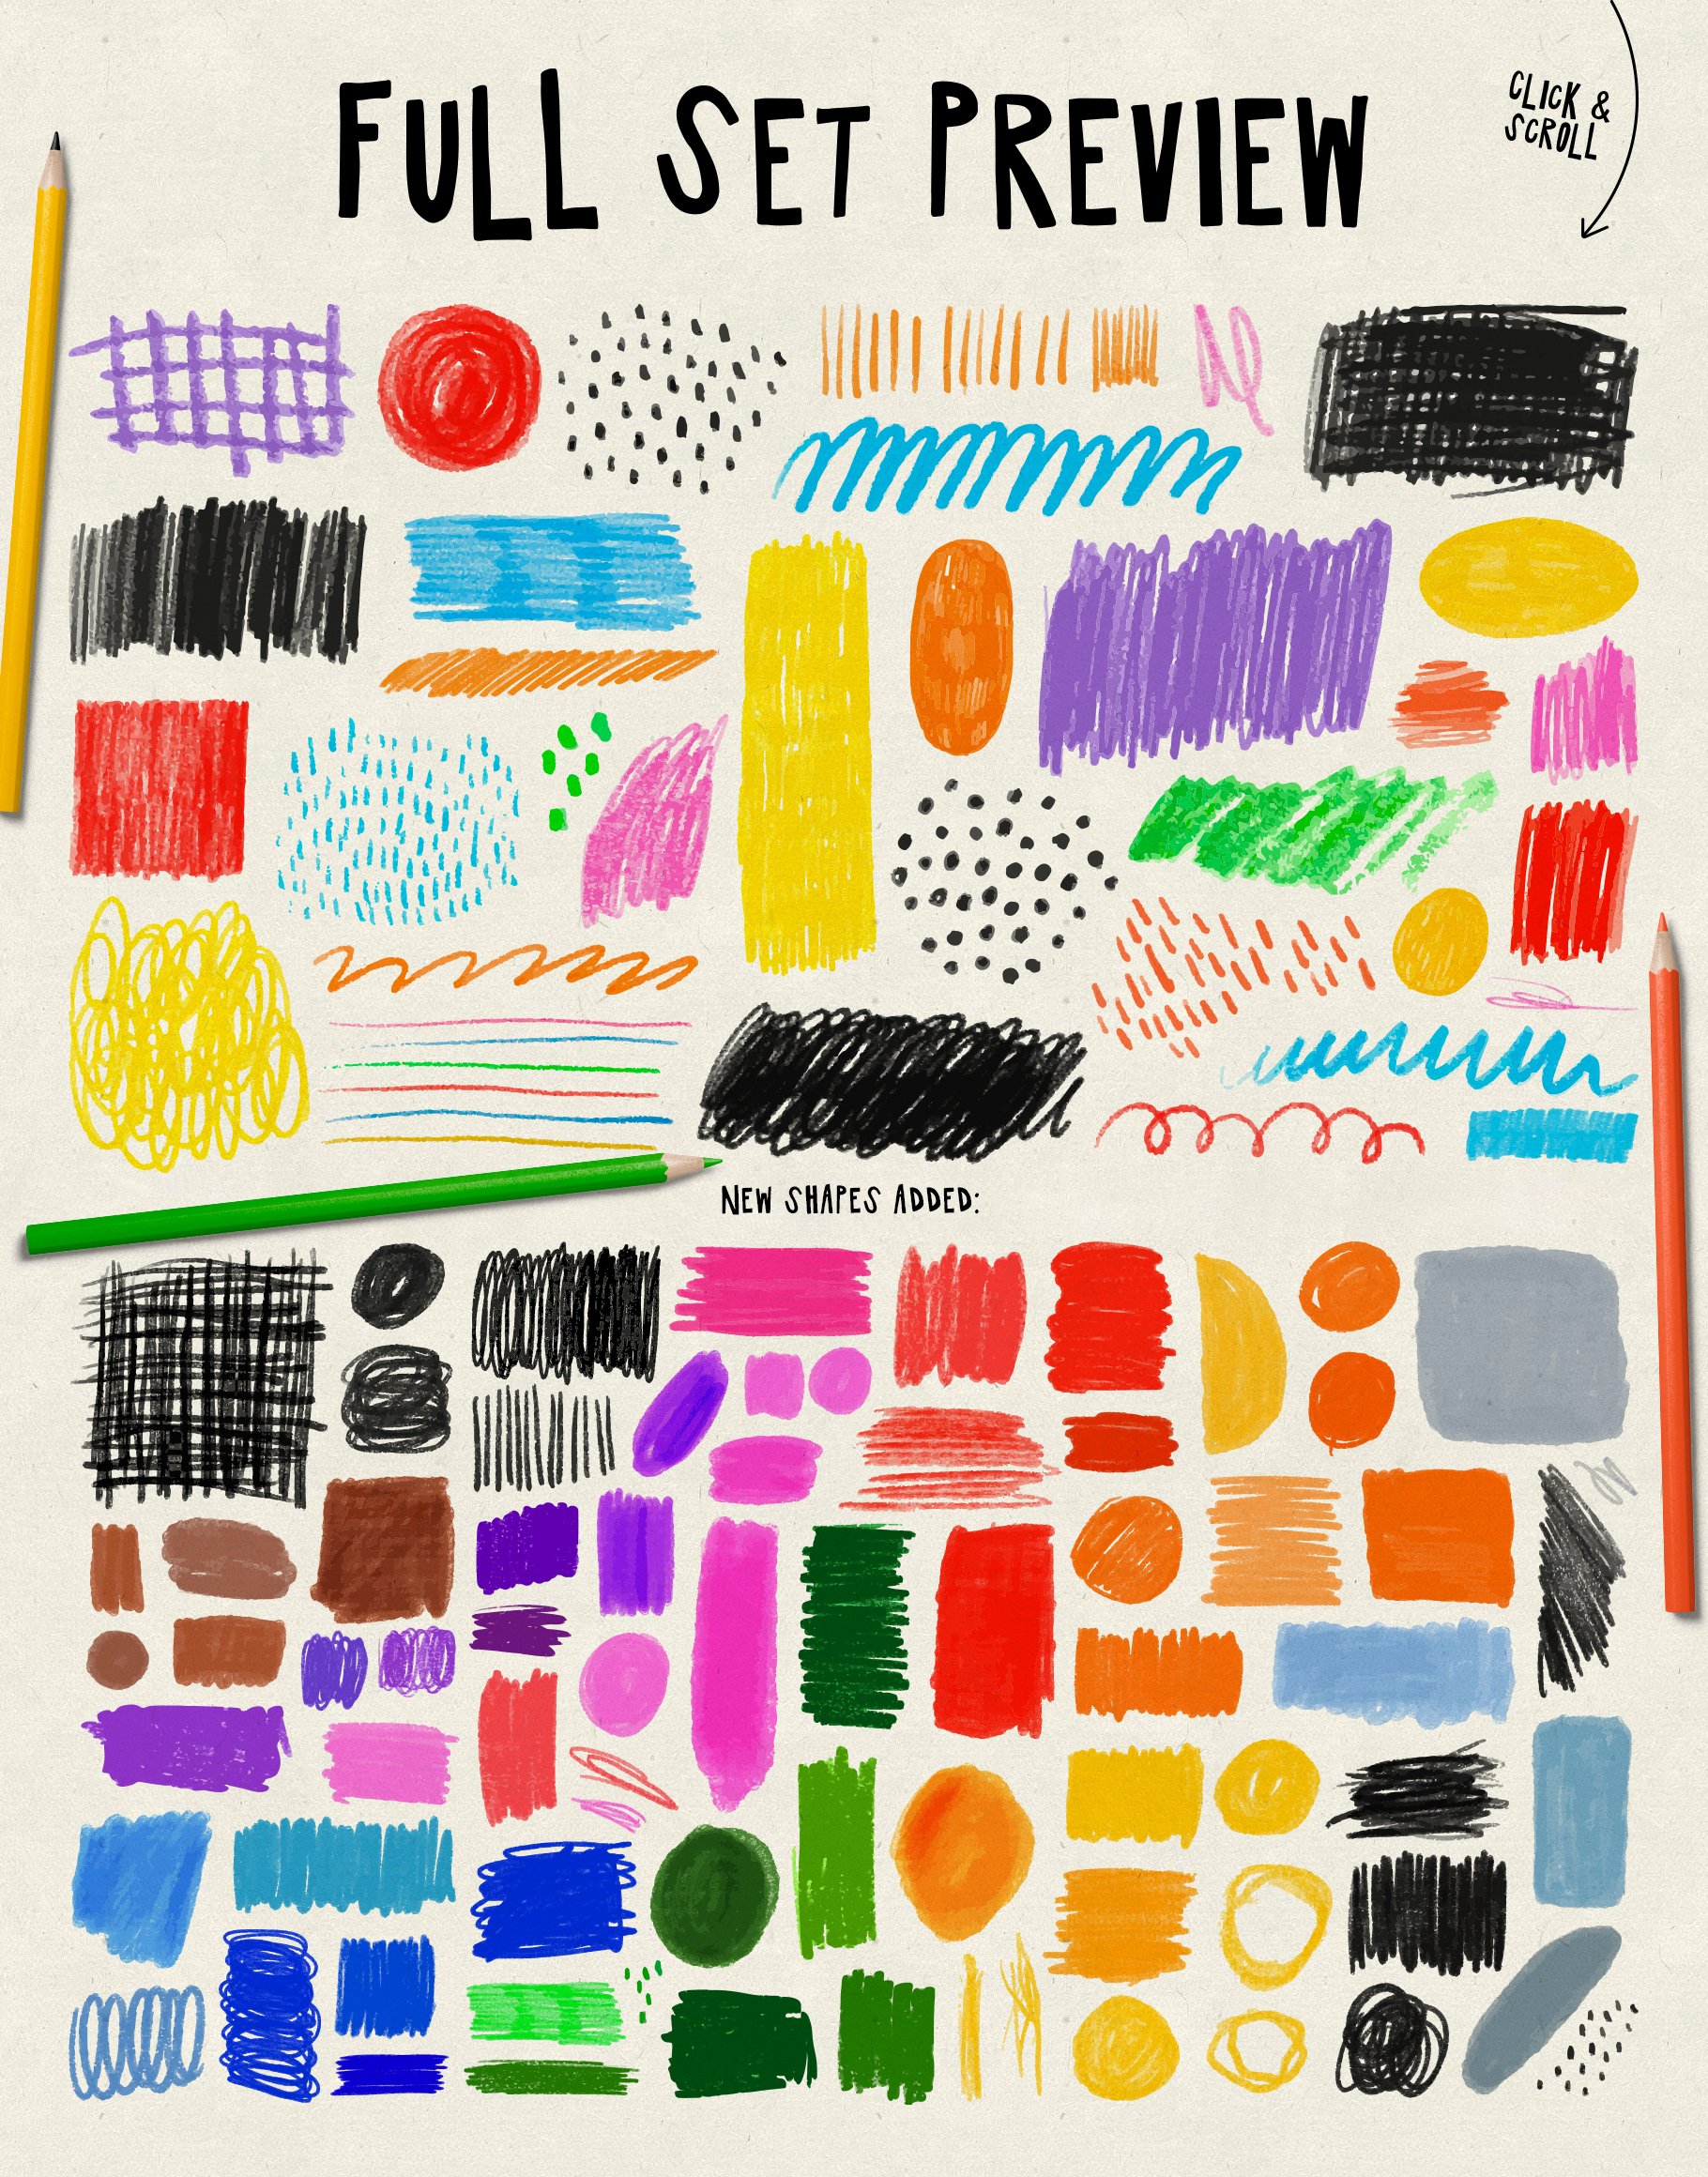 Pencil Doodles: Shapes + Patterns preview image.